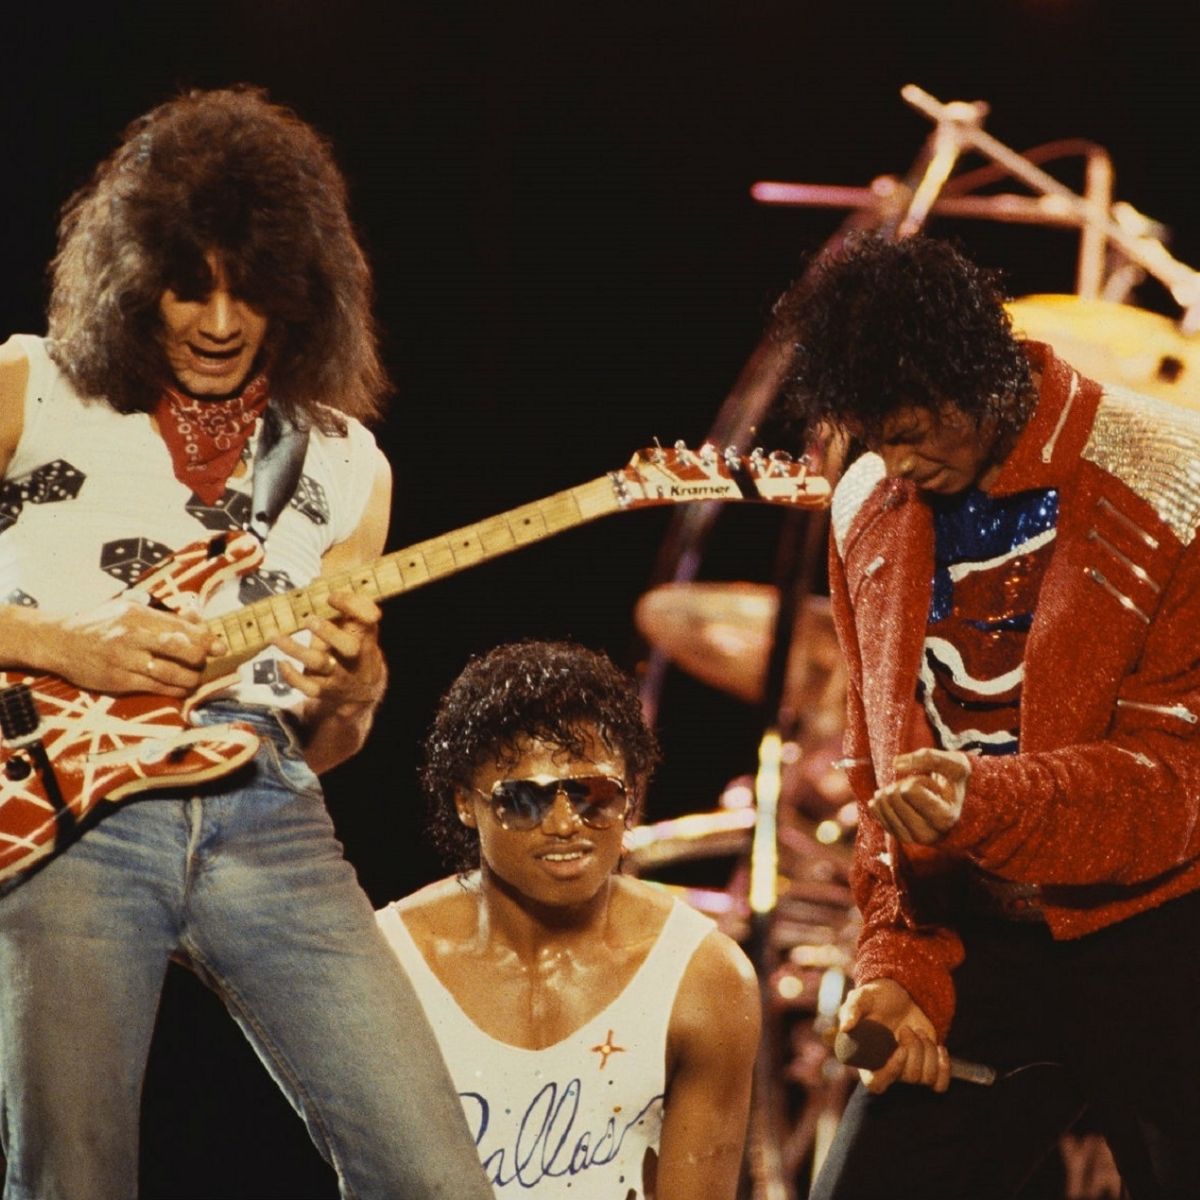 Eddie Van Halen and Michael Jackson on stage